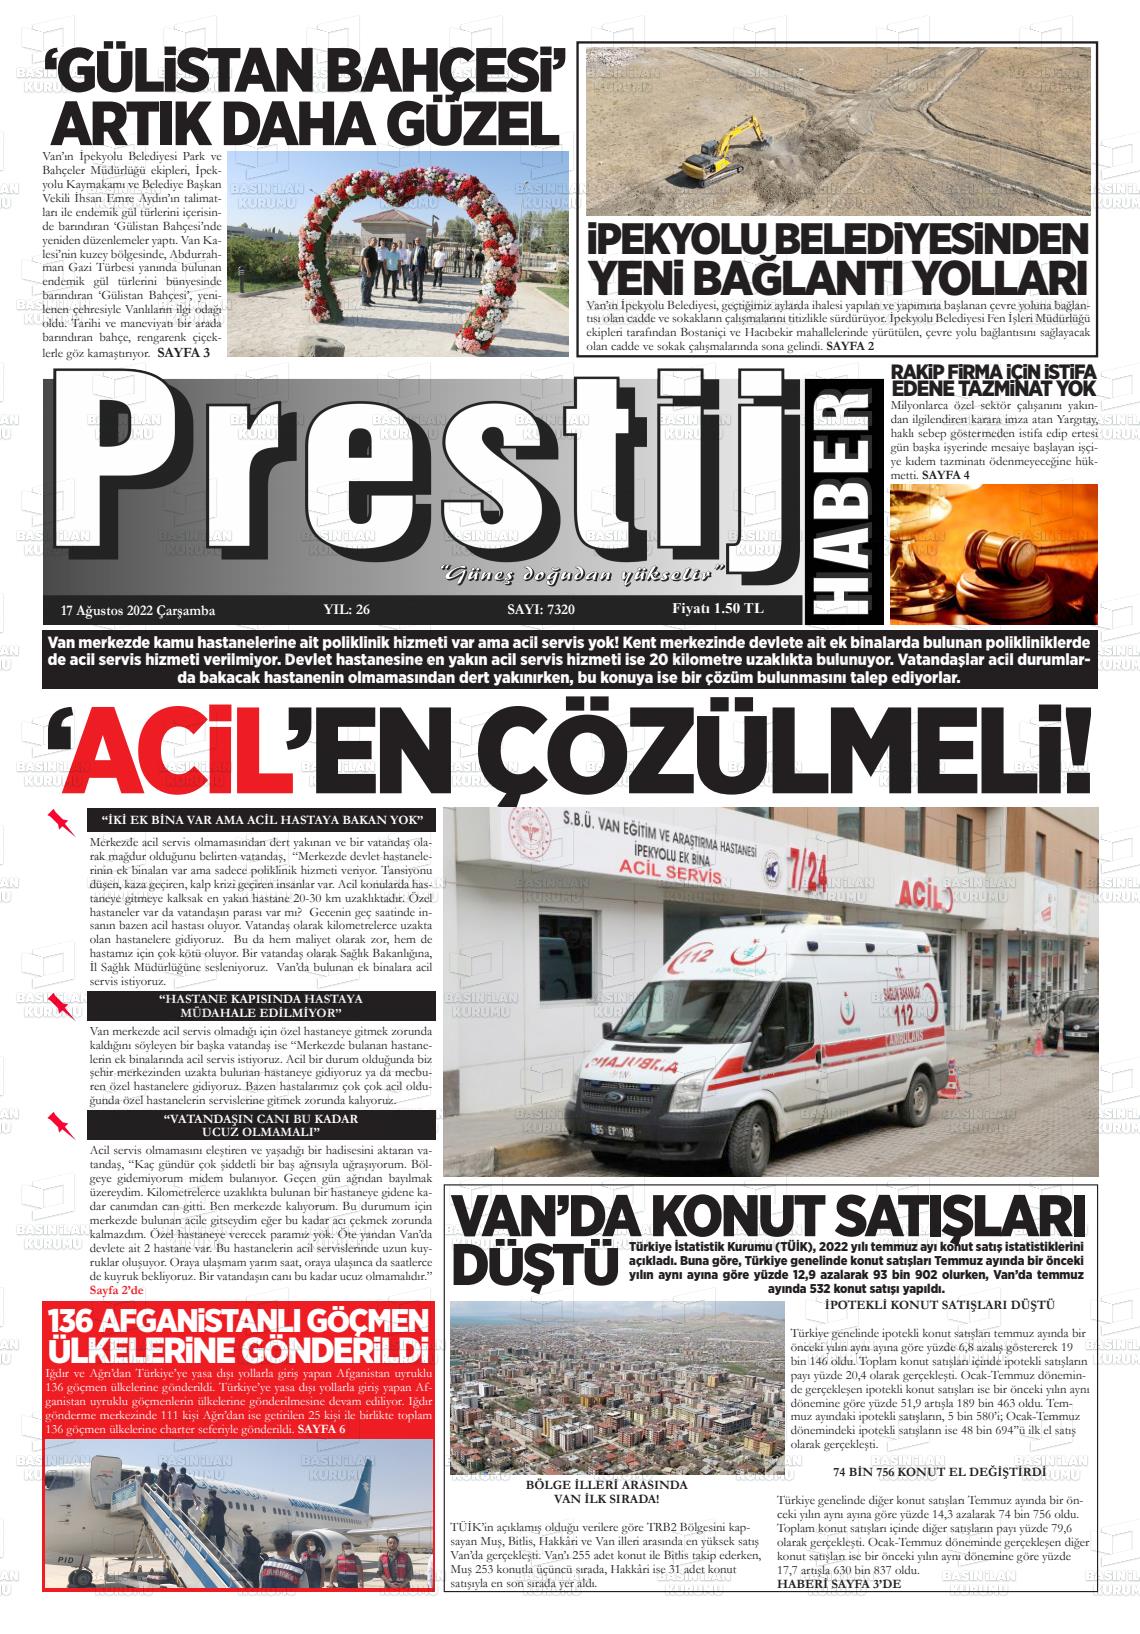 17 Ağustos 2022 Van Prestij Gazete Manşeti